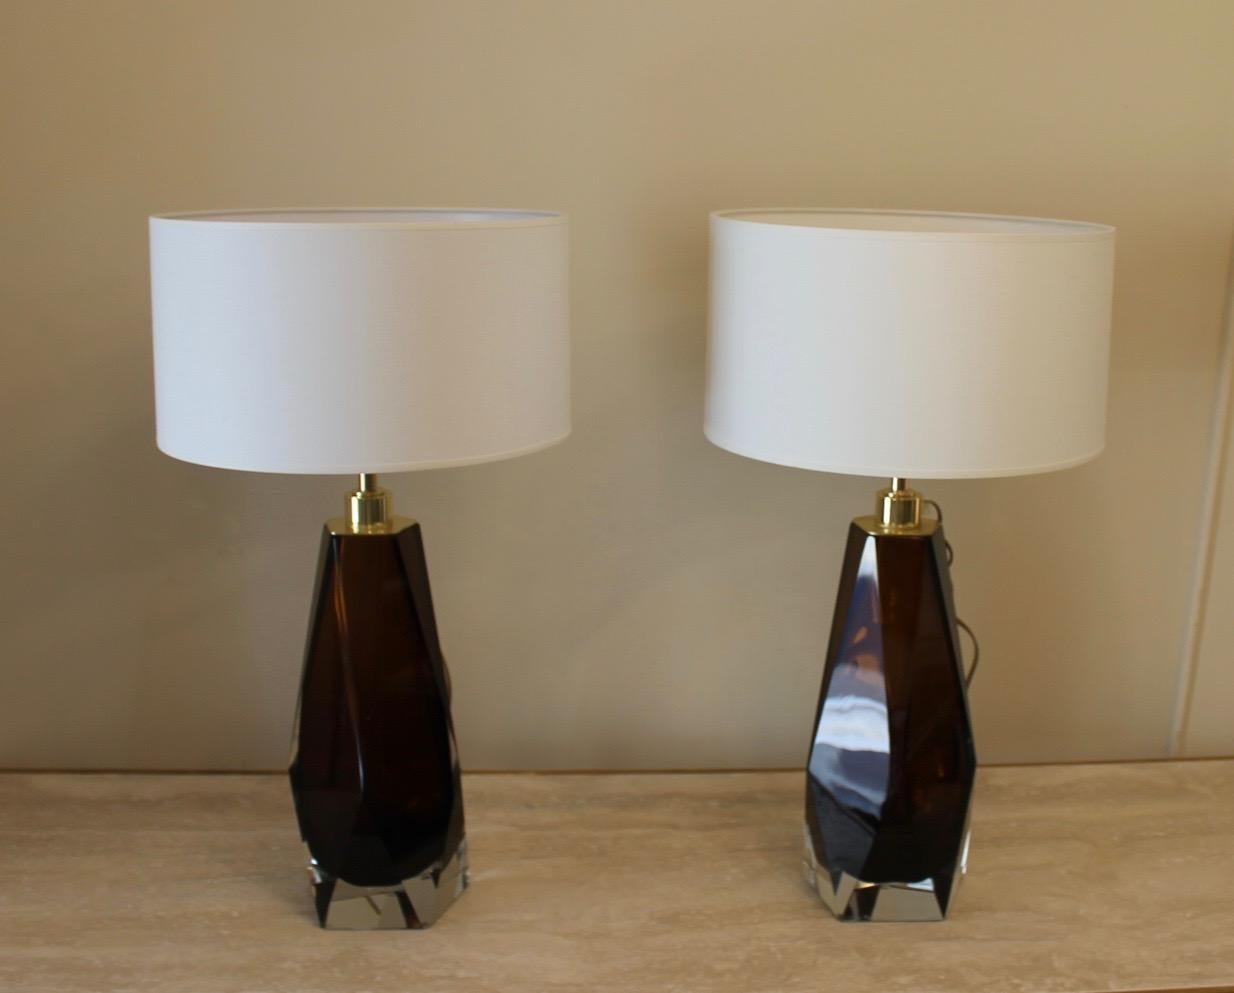 Paire de lampes marron fumé, Murano, structure en laiton, Moderne, avec abat-jour.
Les lampes sont signées Toso Murano.